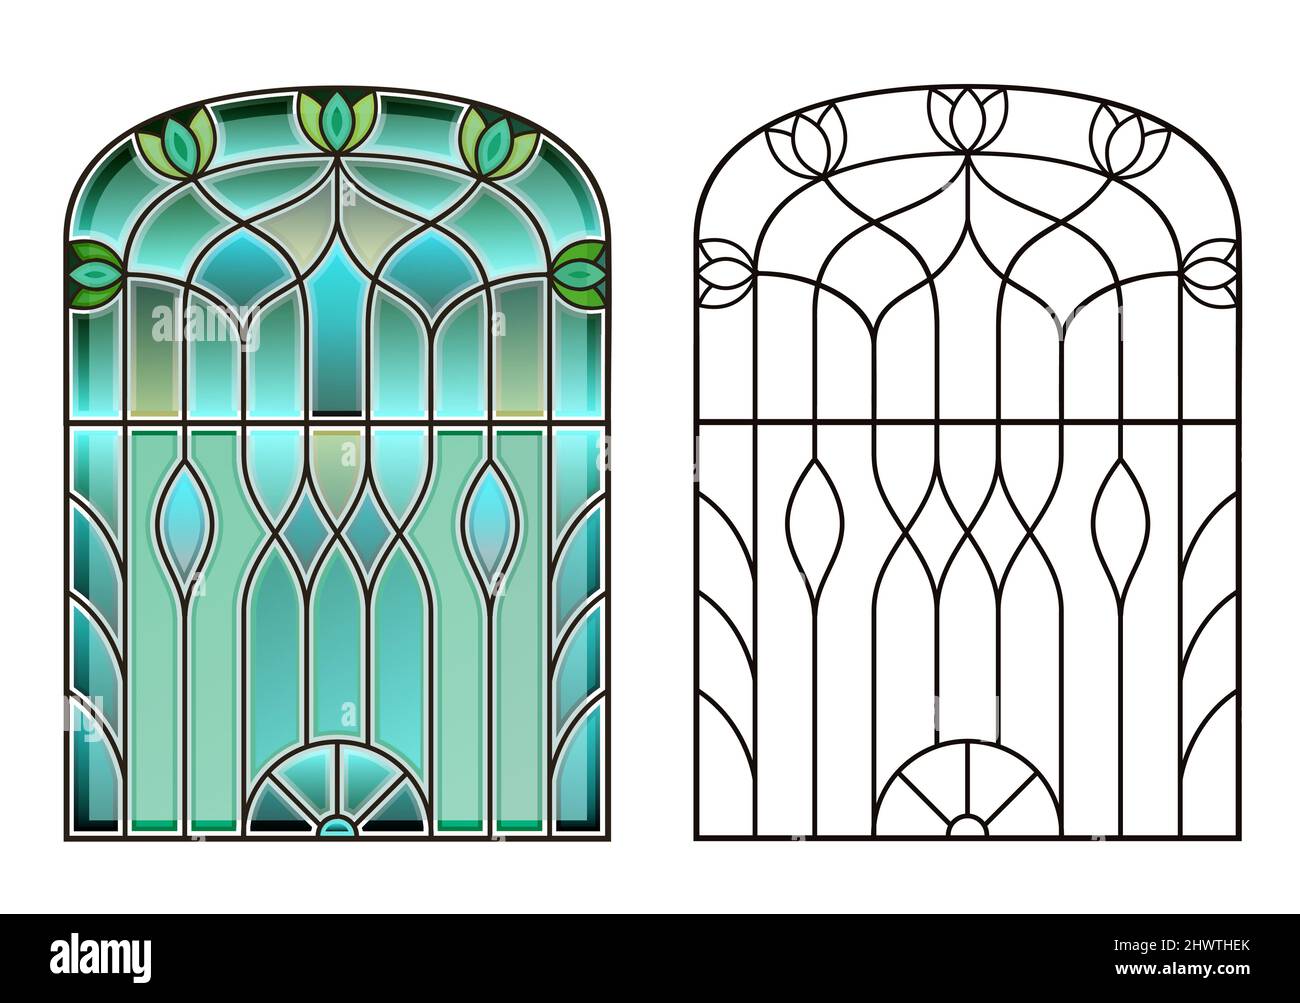 Vecchia finestra ad arco con vetrate colorate Illustrazione Vettoriale